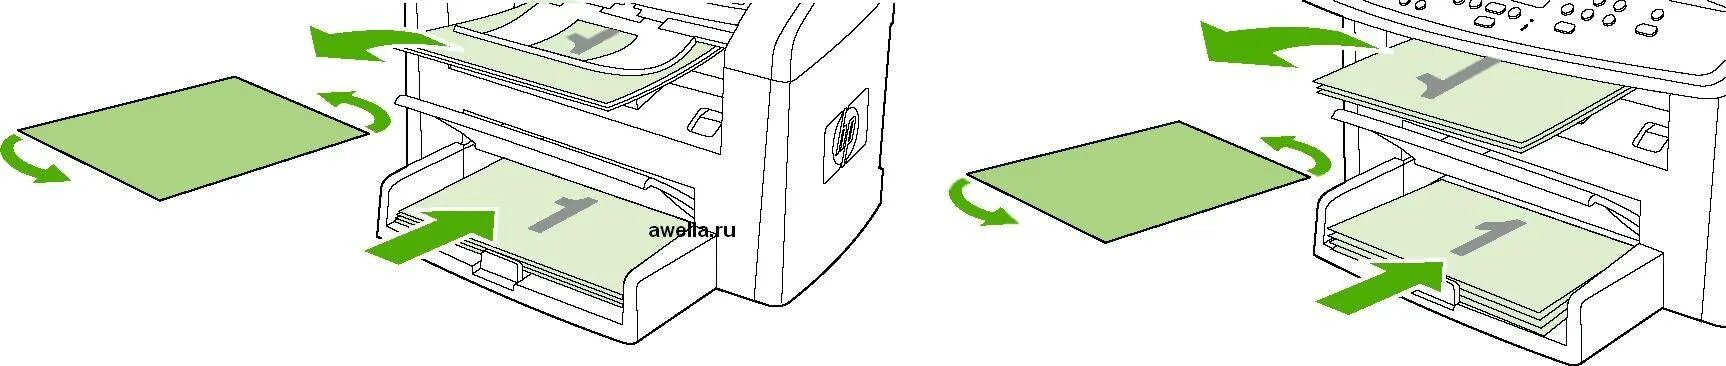 Принтер Samsung двусторонняя печать. Лоток двухсторонняя печать) принтера бротхер. Печать на обеих сторонах